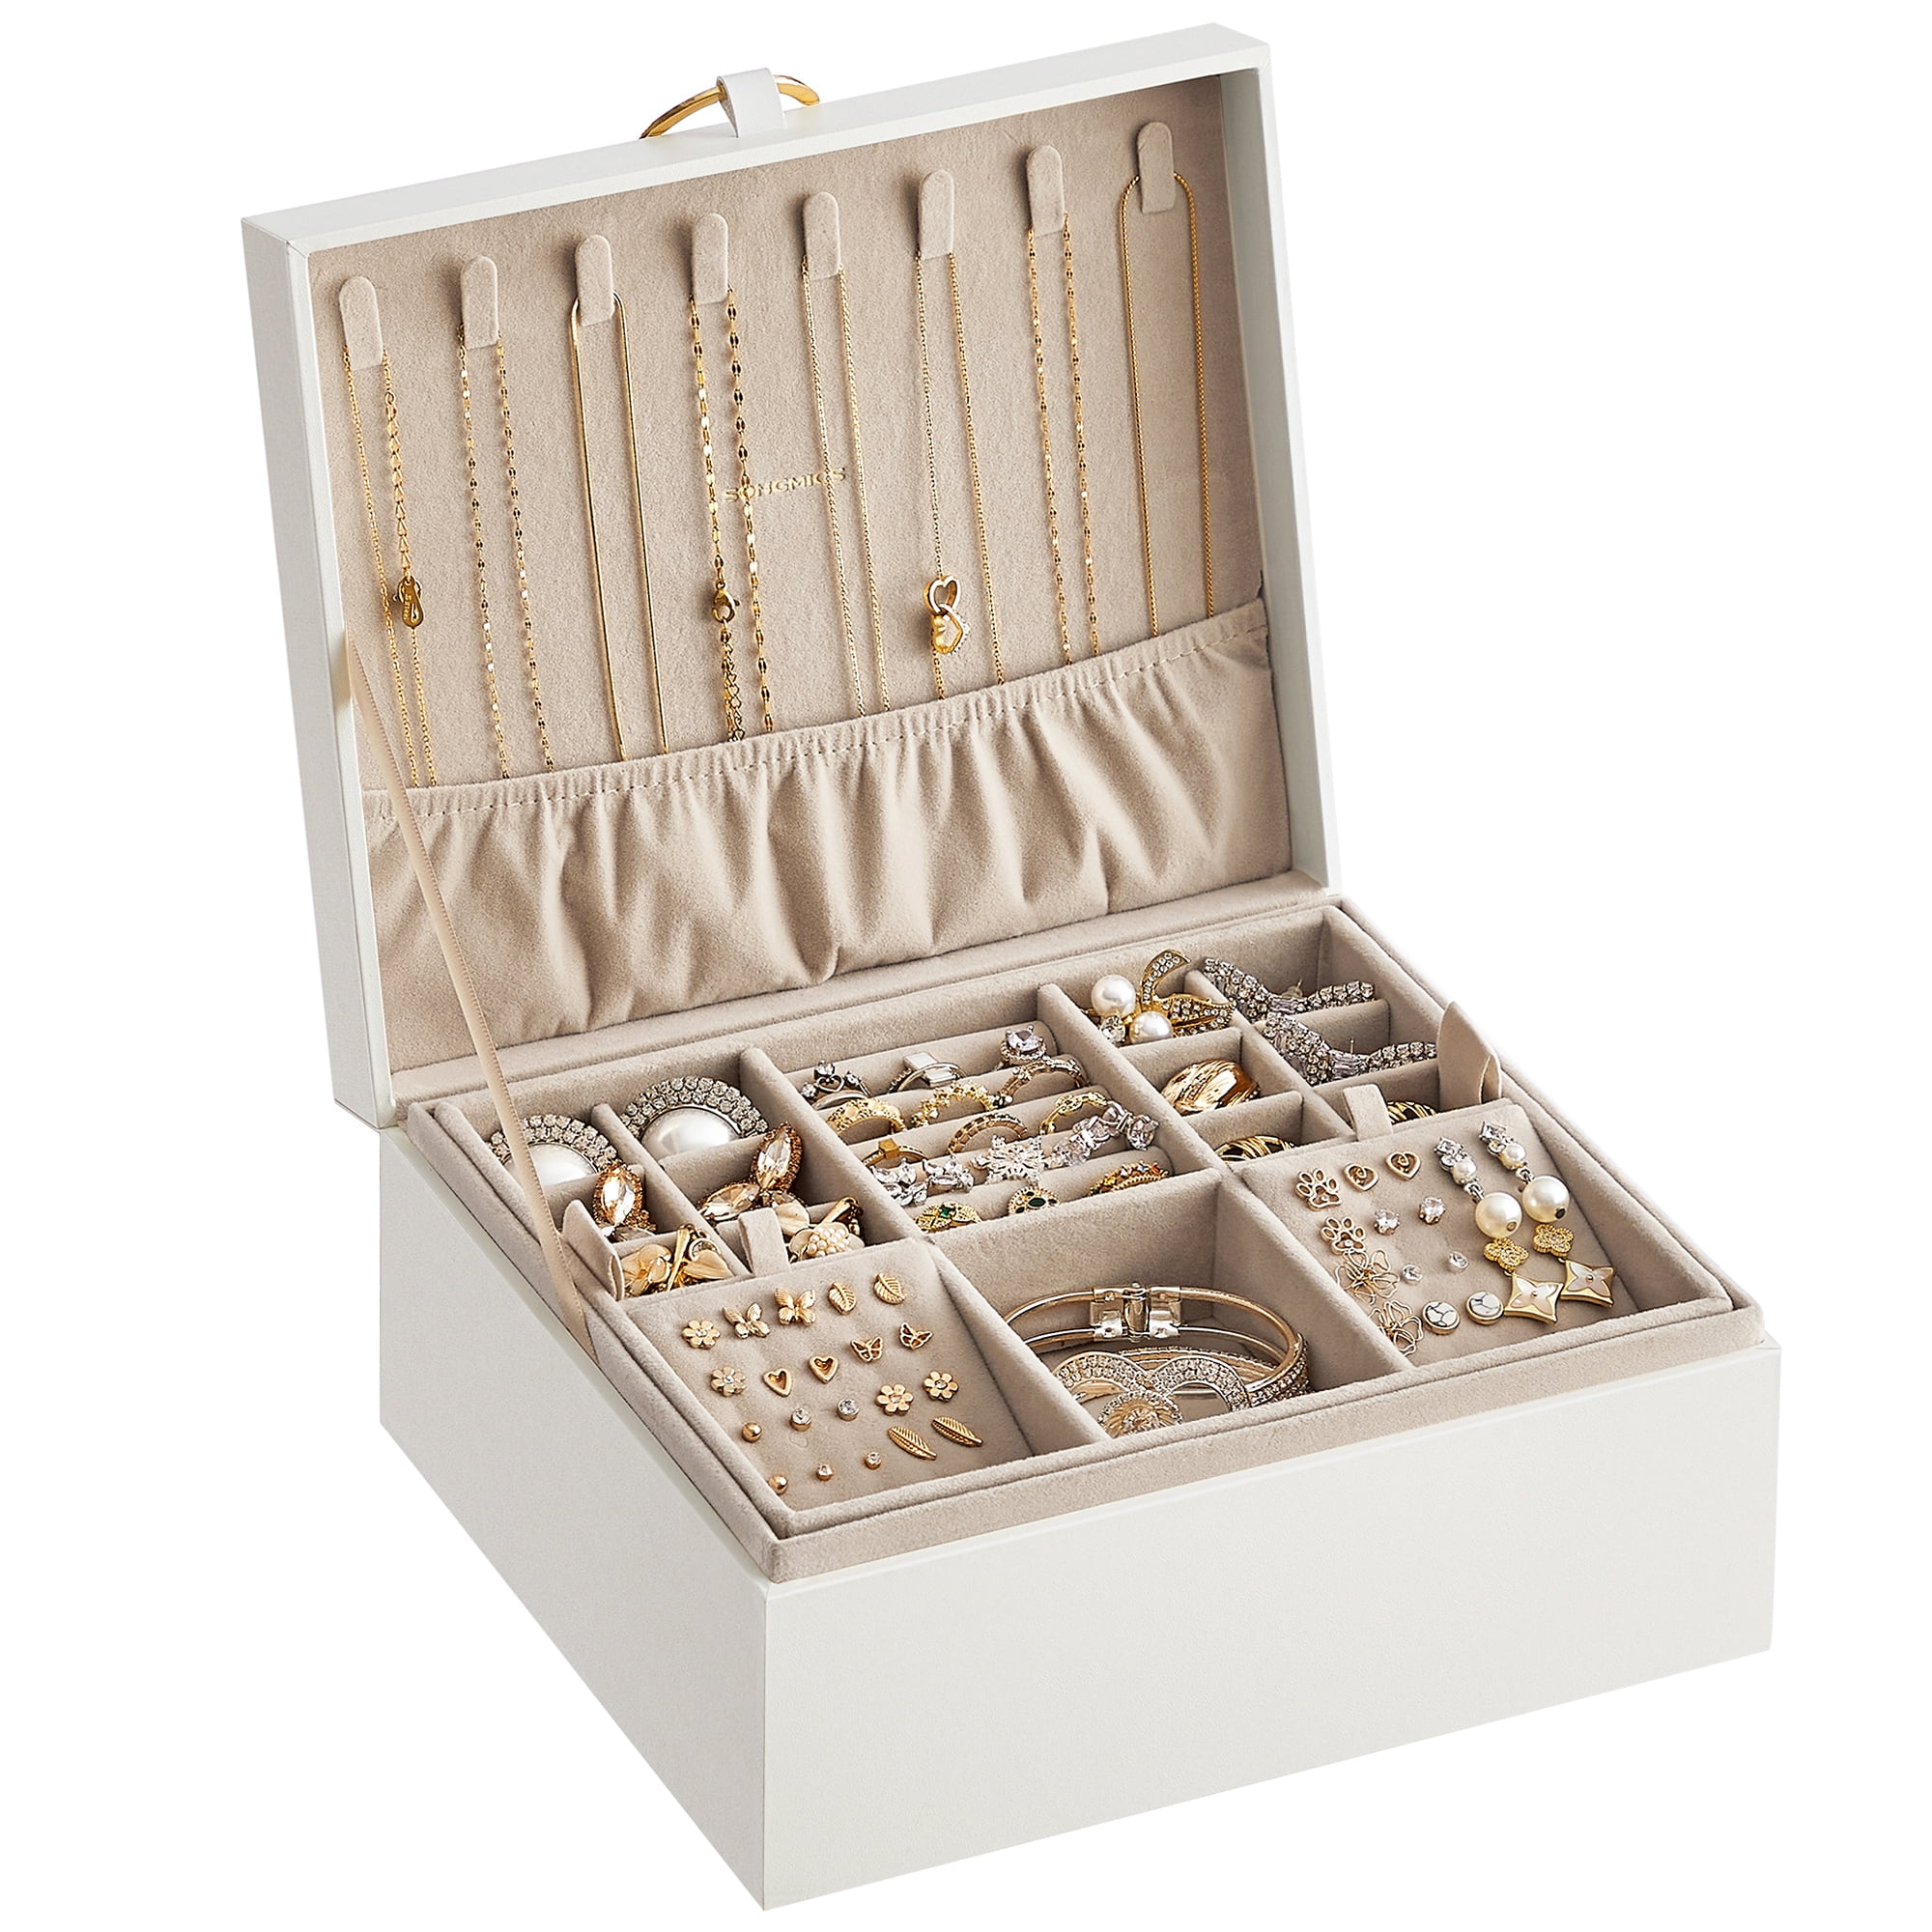 SONGMICS 2-Tier Jewelry Box Jewelry Storage Organizer with Handle ...